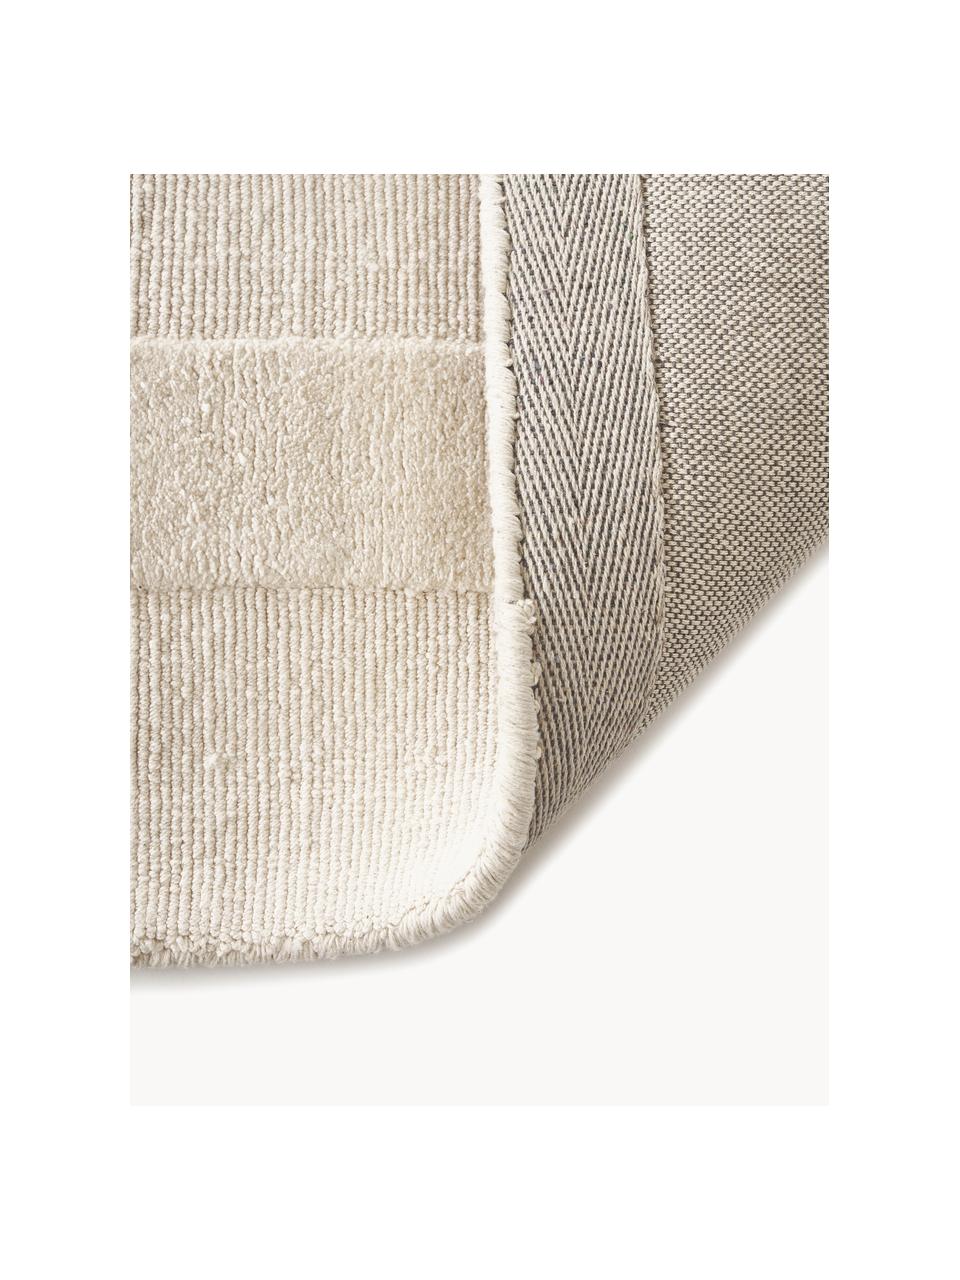 Tappeto in cotone tessuto a mano con motivo in rilievo Dania, 100% cotone certificato GRS, Bianco crema, Larg. 200 x Lung. 300 cm (taglia L)